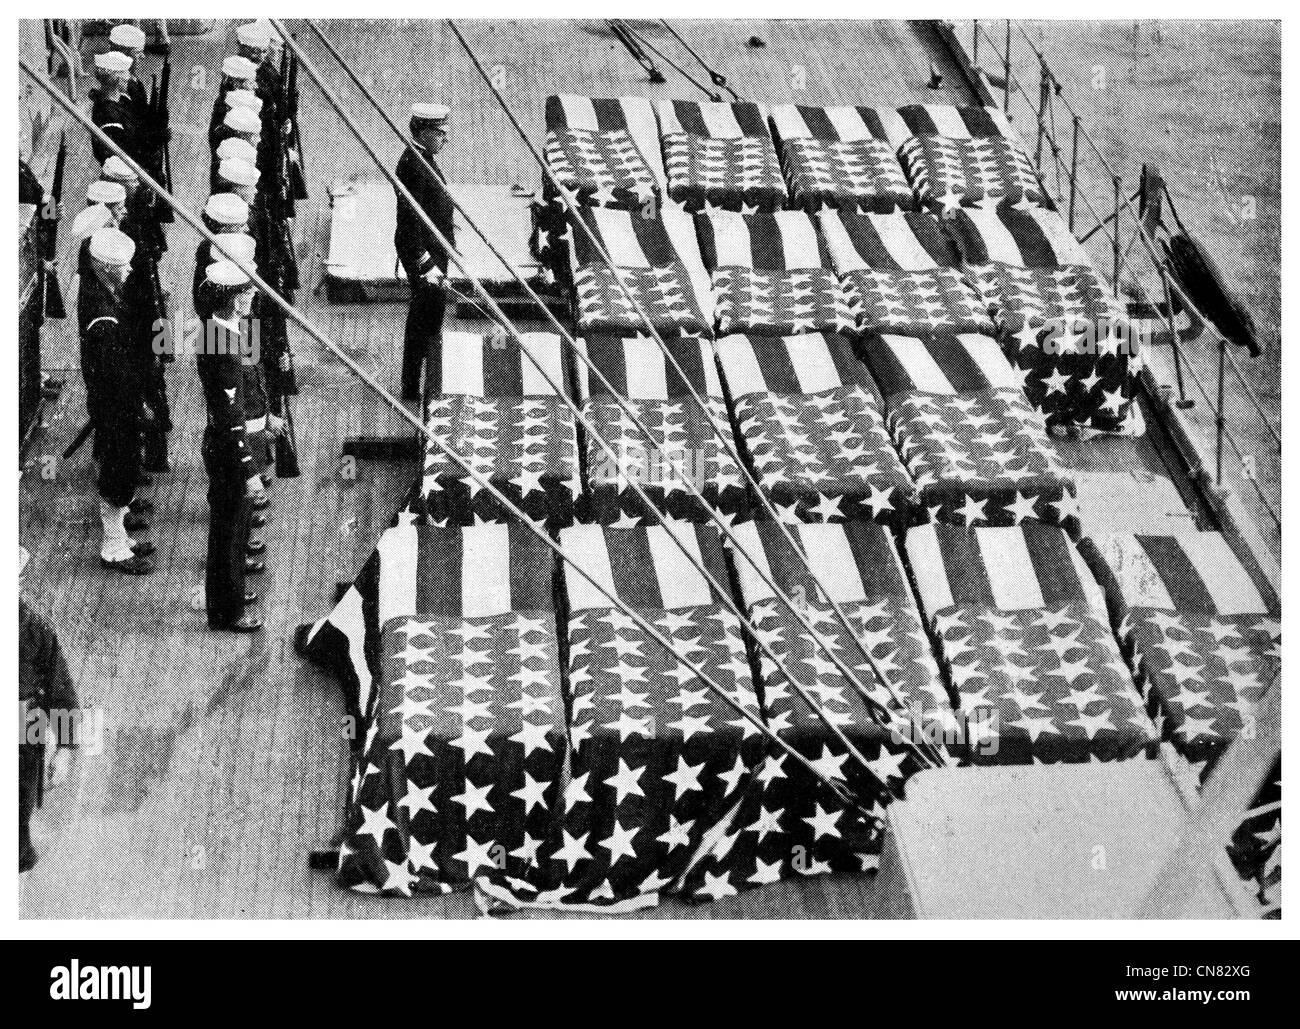 1917 cérémonie de funérailles militaires navales de la marine en mer d'inhumation Banque D'Images